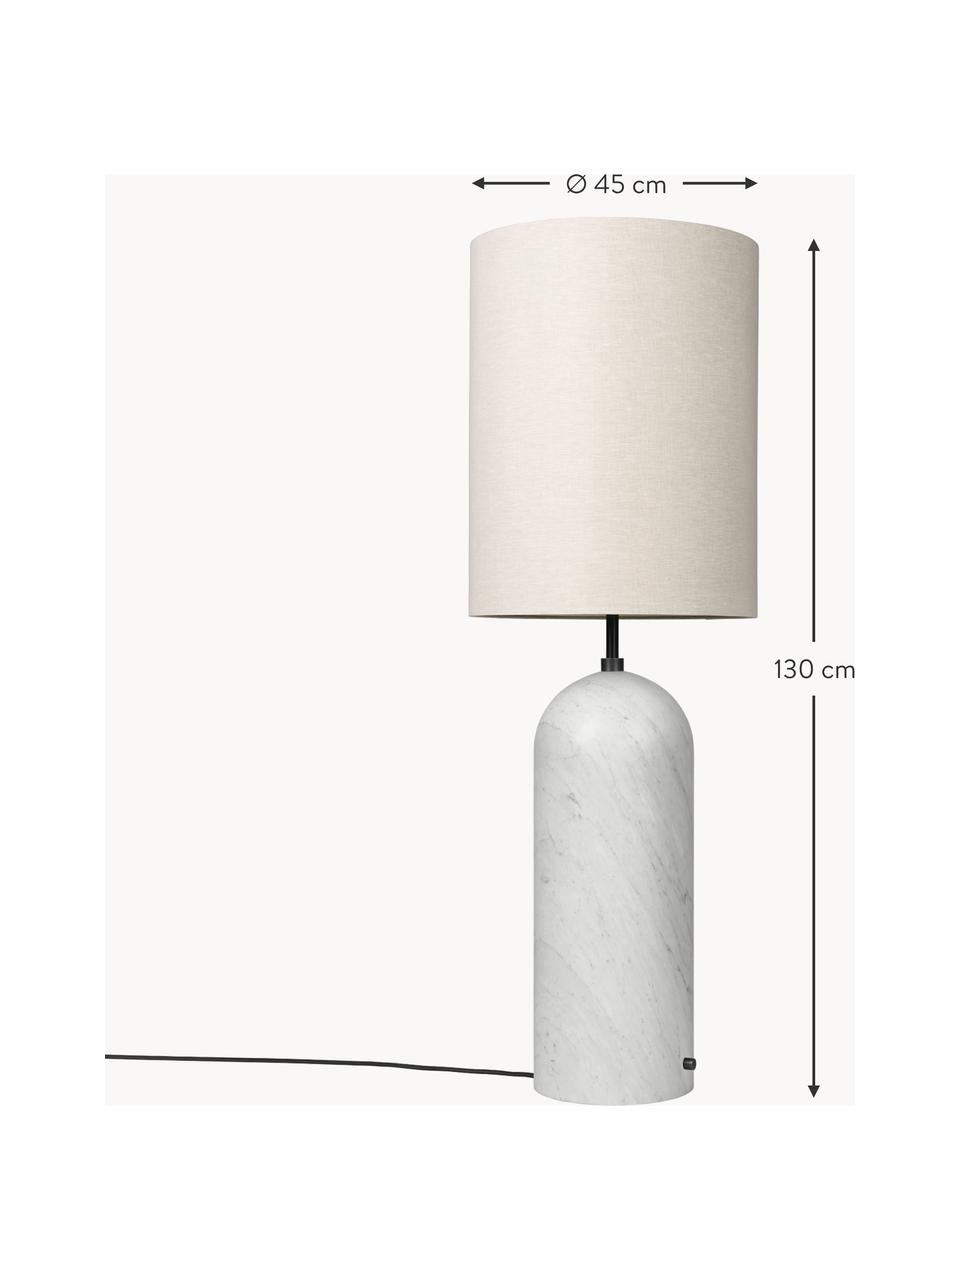 Malá stmívatelná stojací lampa s mramorovou podstavou Gravity, Světle béžová, mramorovaná bílá, V 130 cm